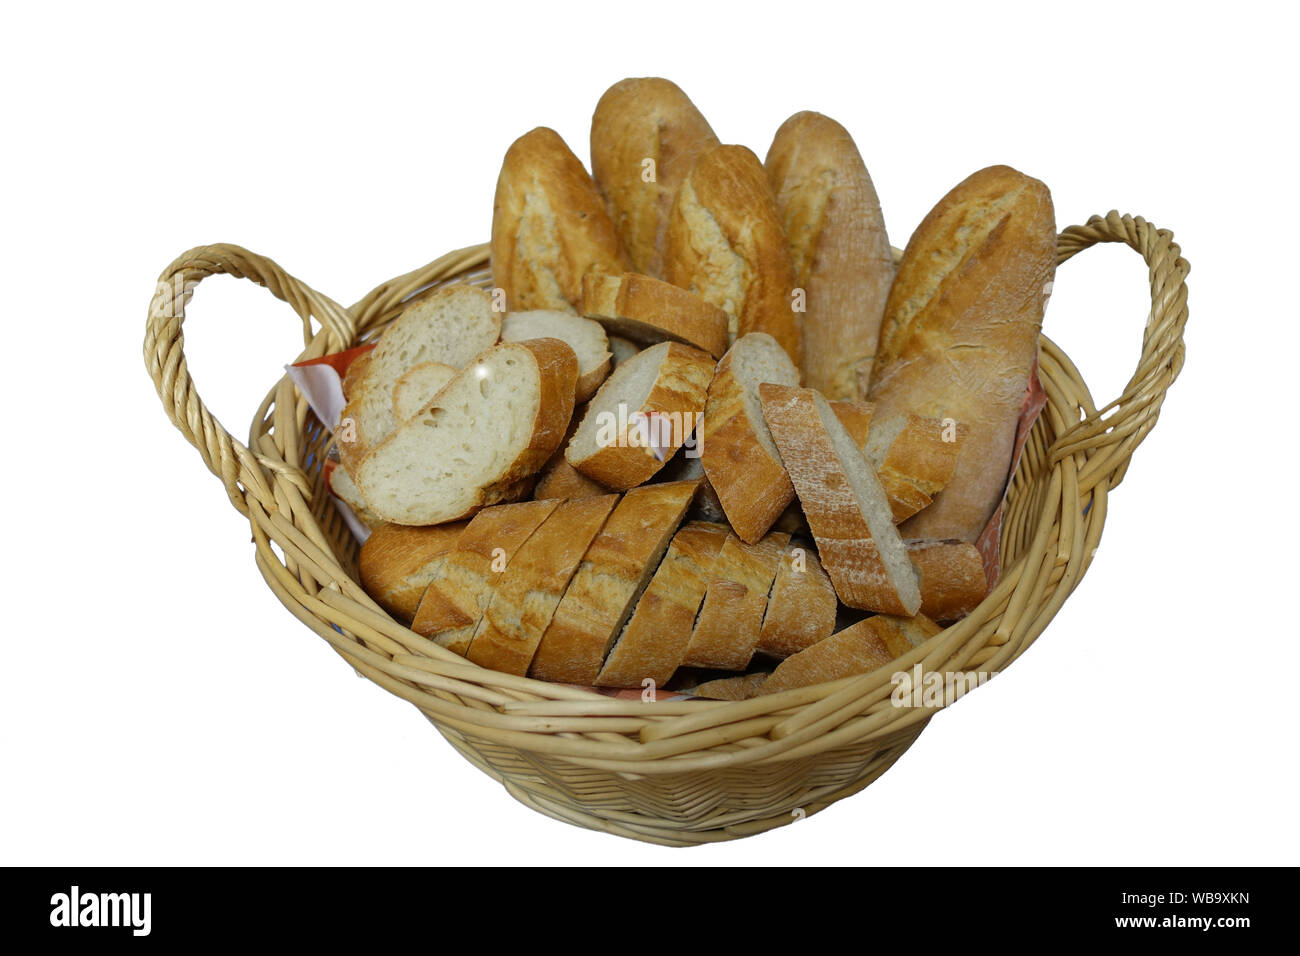 Mit Weidenkorb geschnittenem Baguette-Brot auf weißem Hintergrund - Freisteller Foto de stock